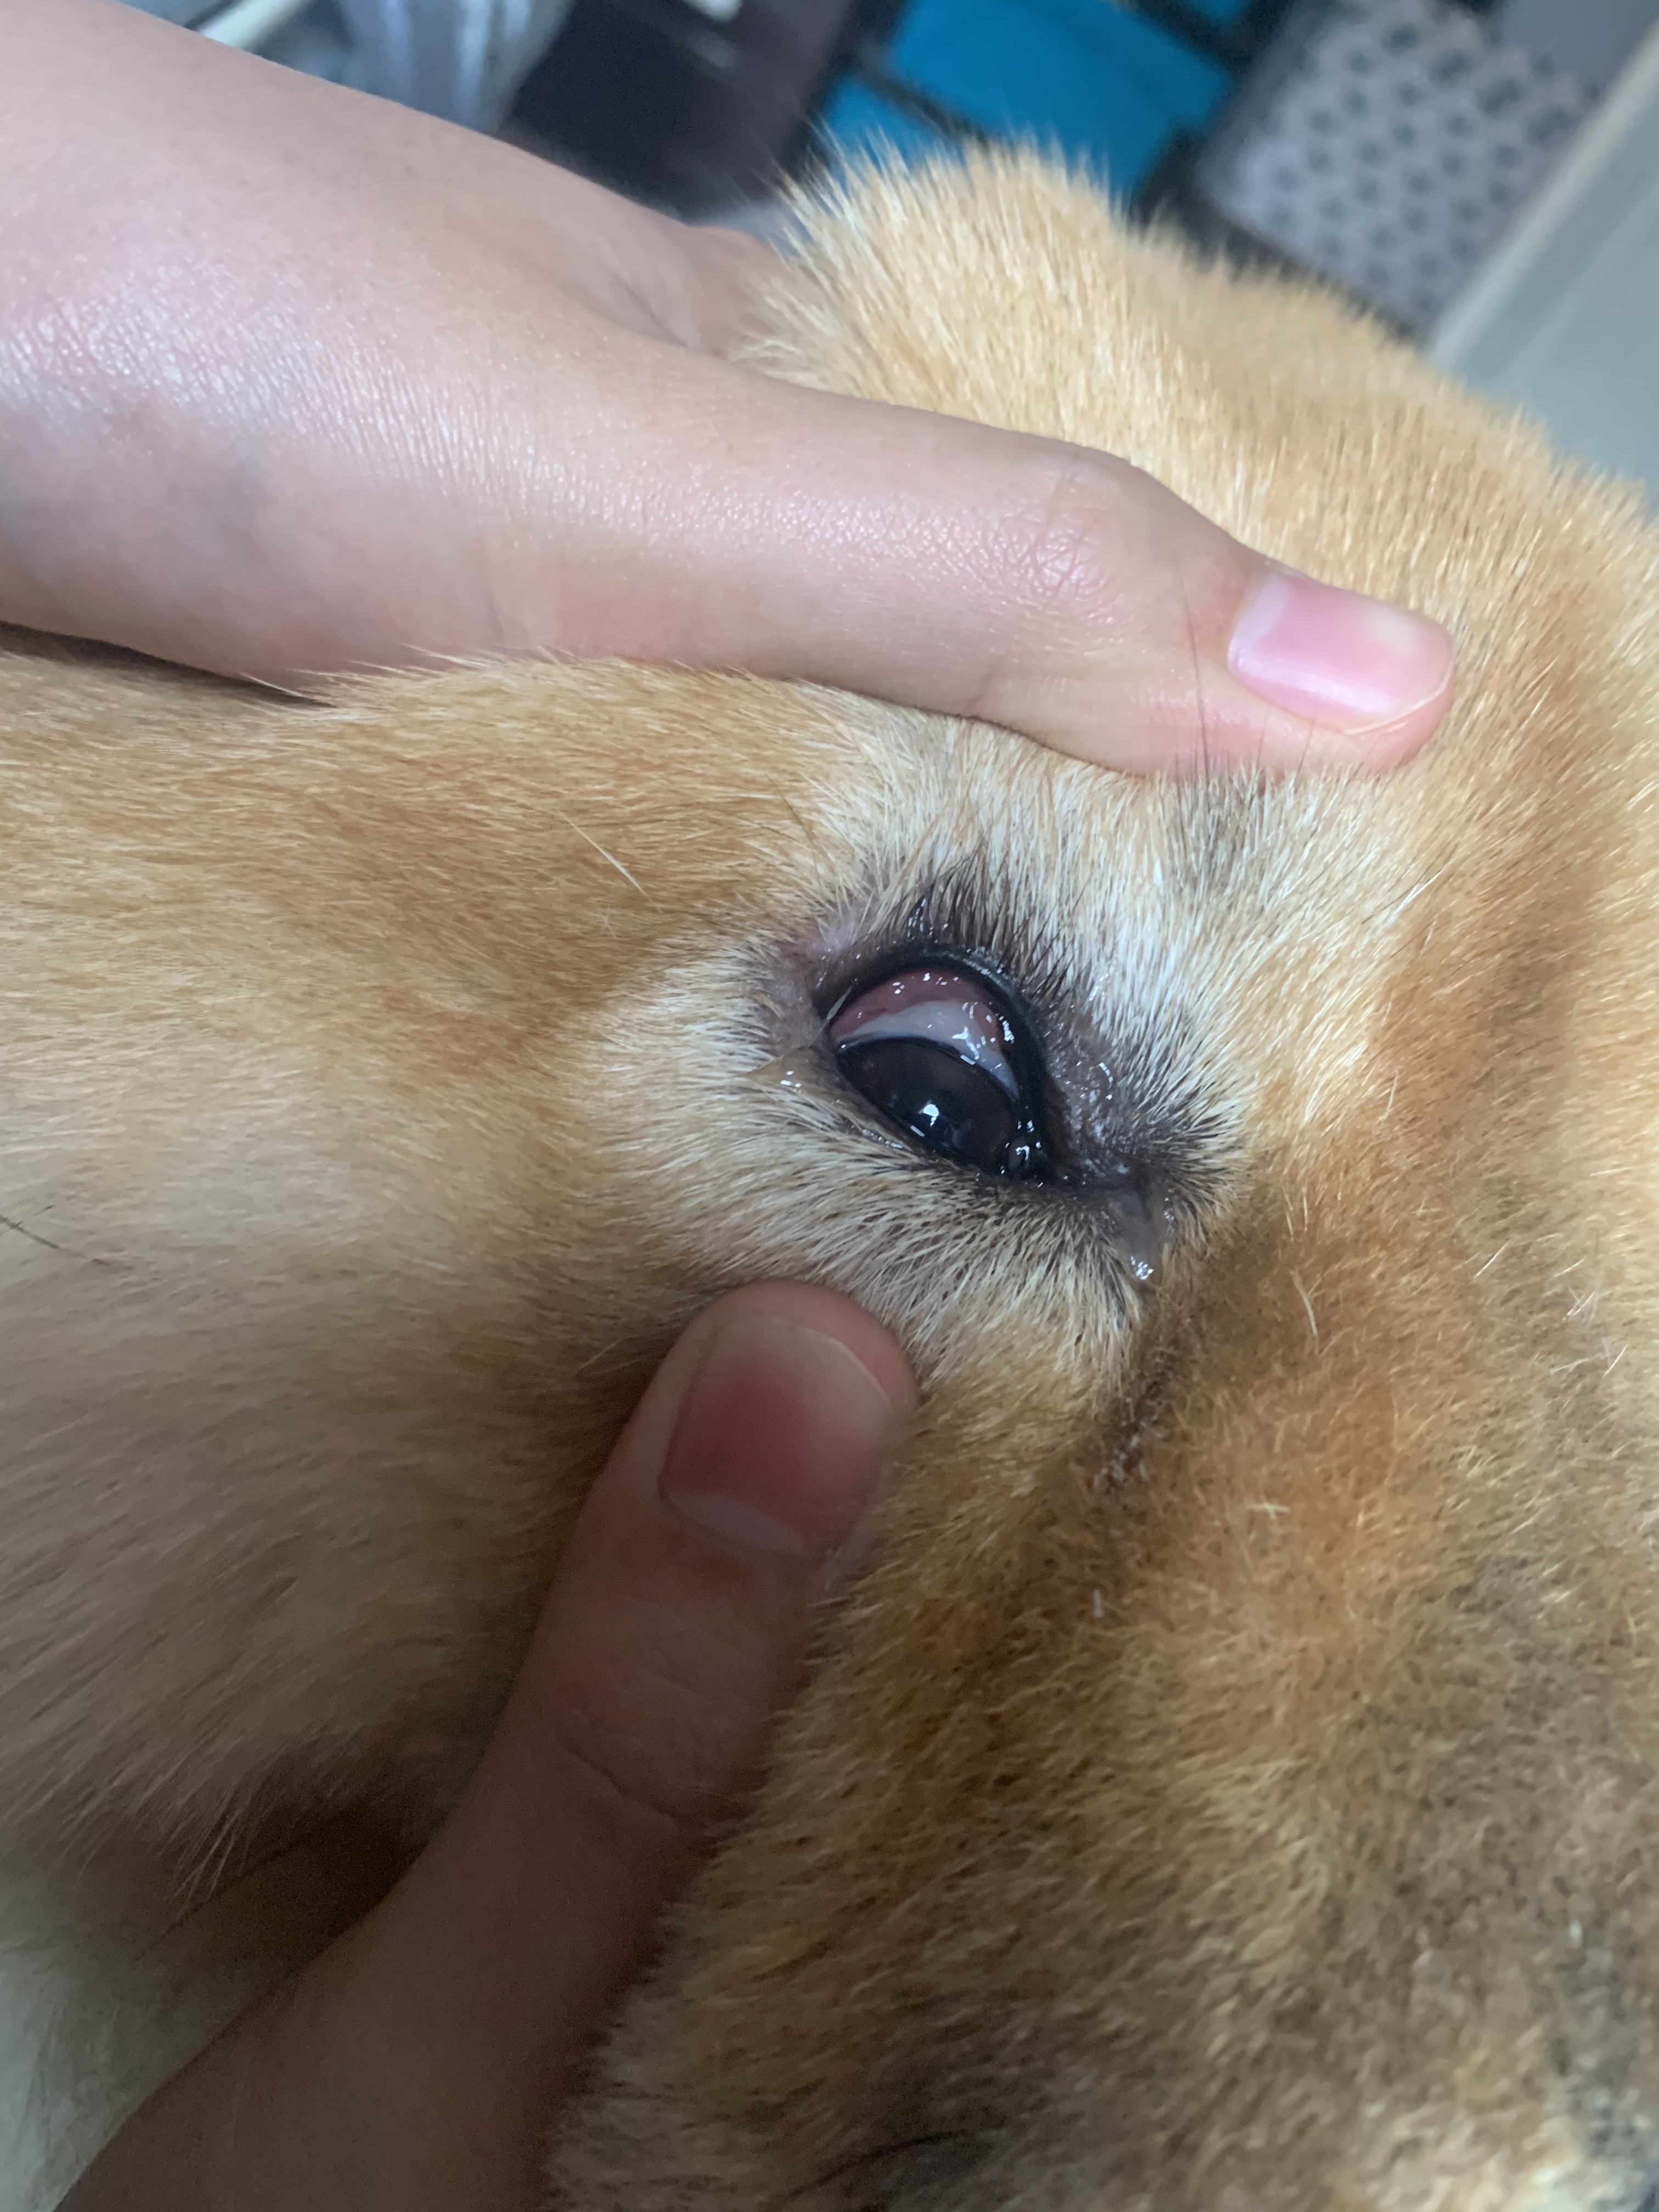 มีปัญหาเรื่อง ดวงตา ของสุนัข
